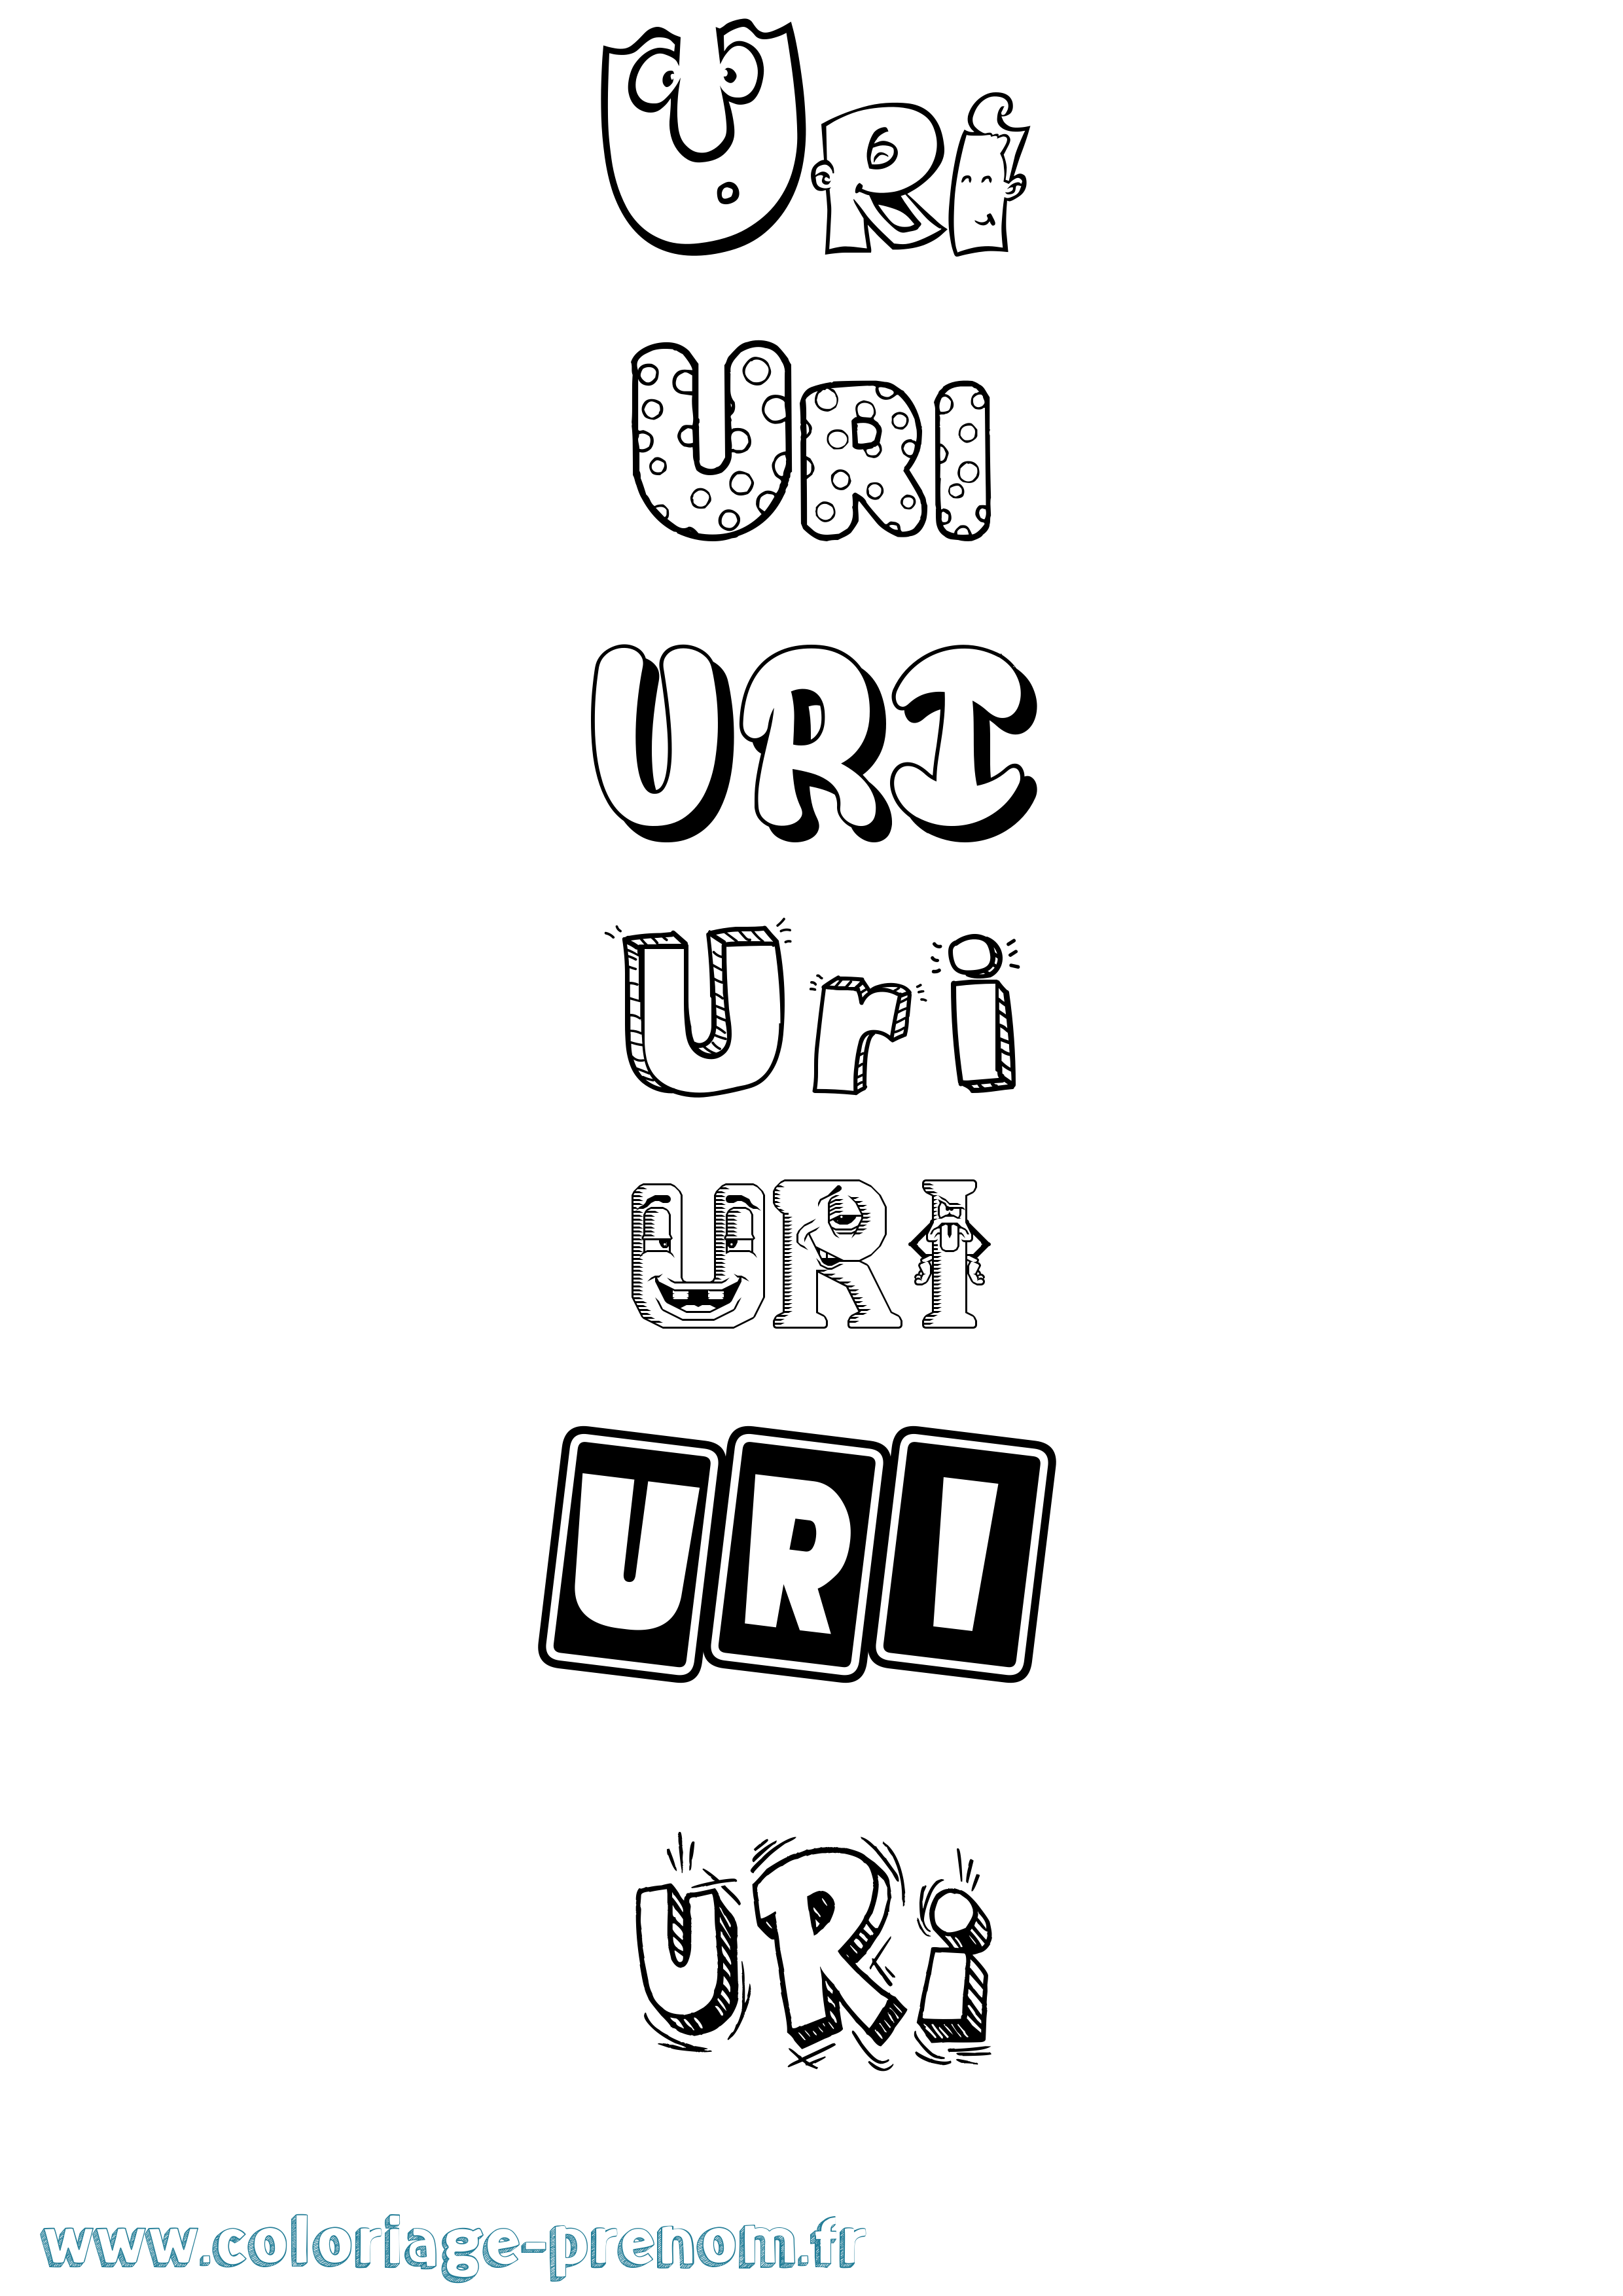 Coloriage prénom Uri Fun